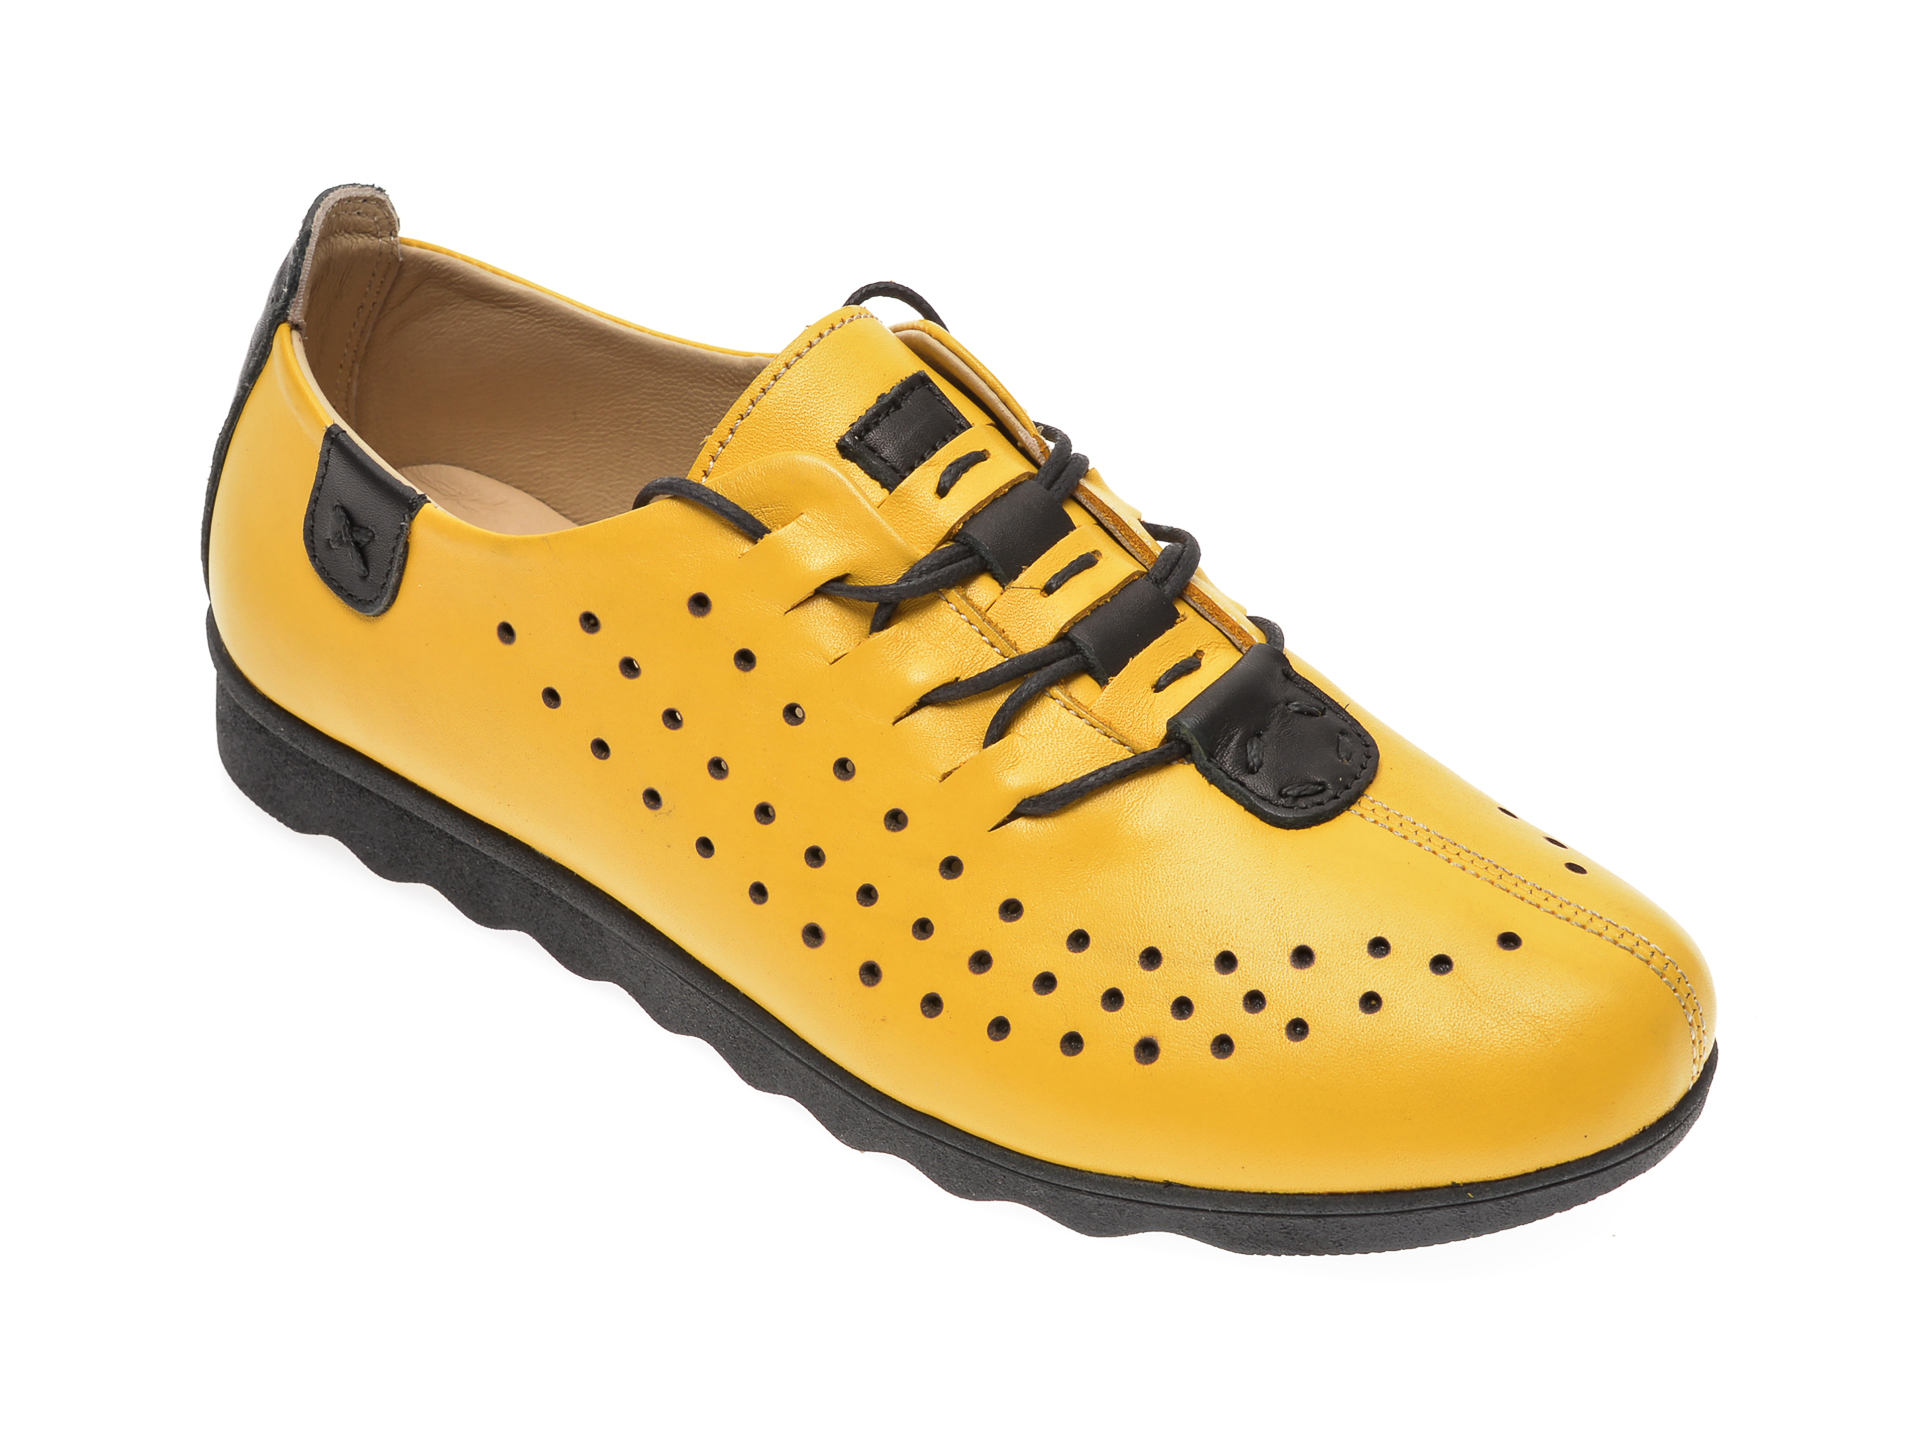 Pantofi PASS COLLECTION galbeni, K92101, din piele naturala PASS COLLECTION imagine reduceri